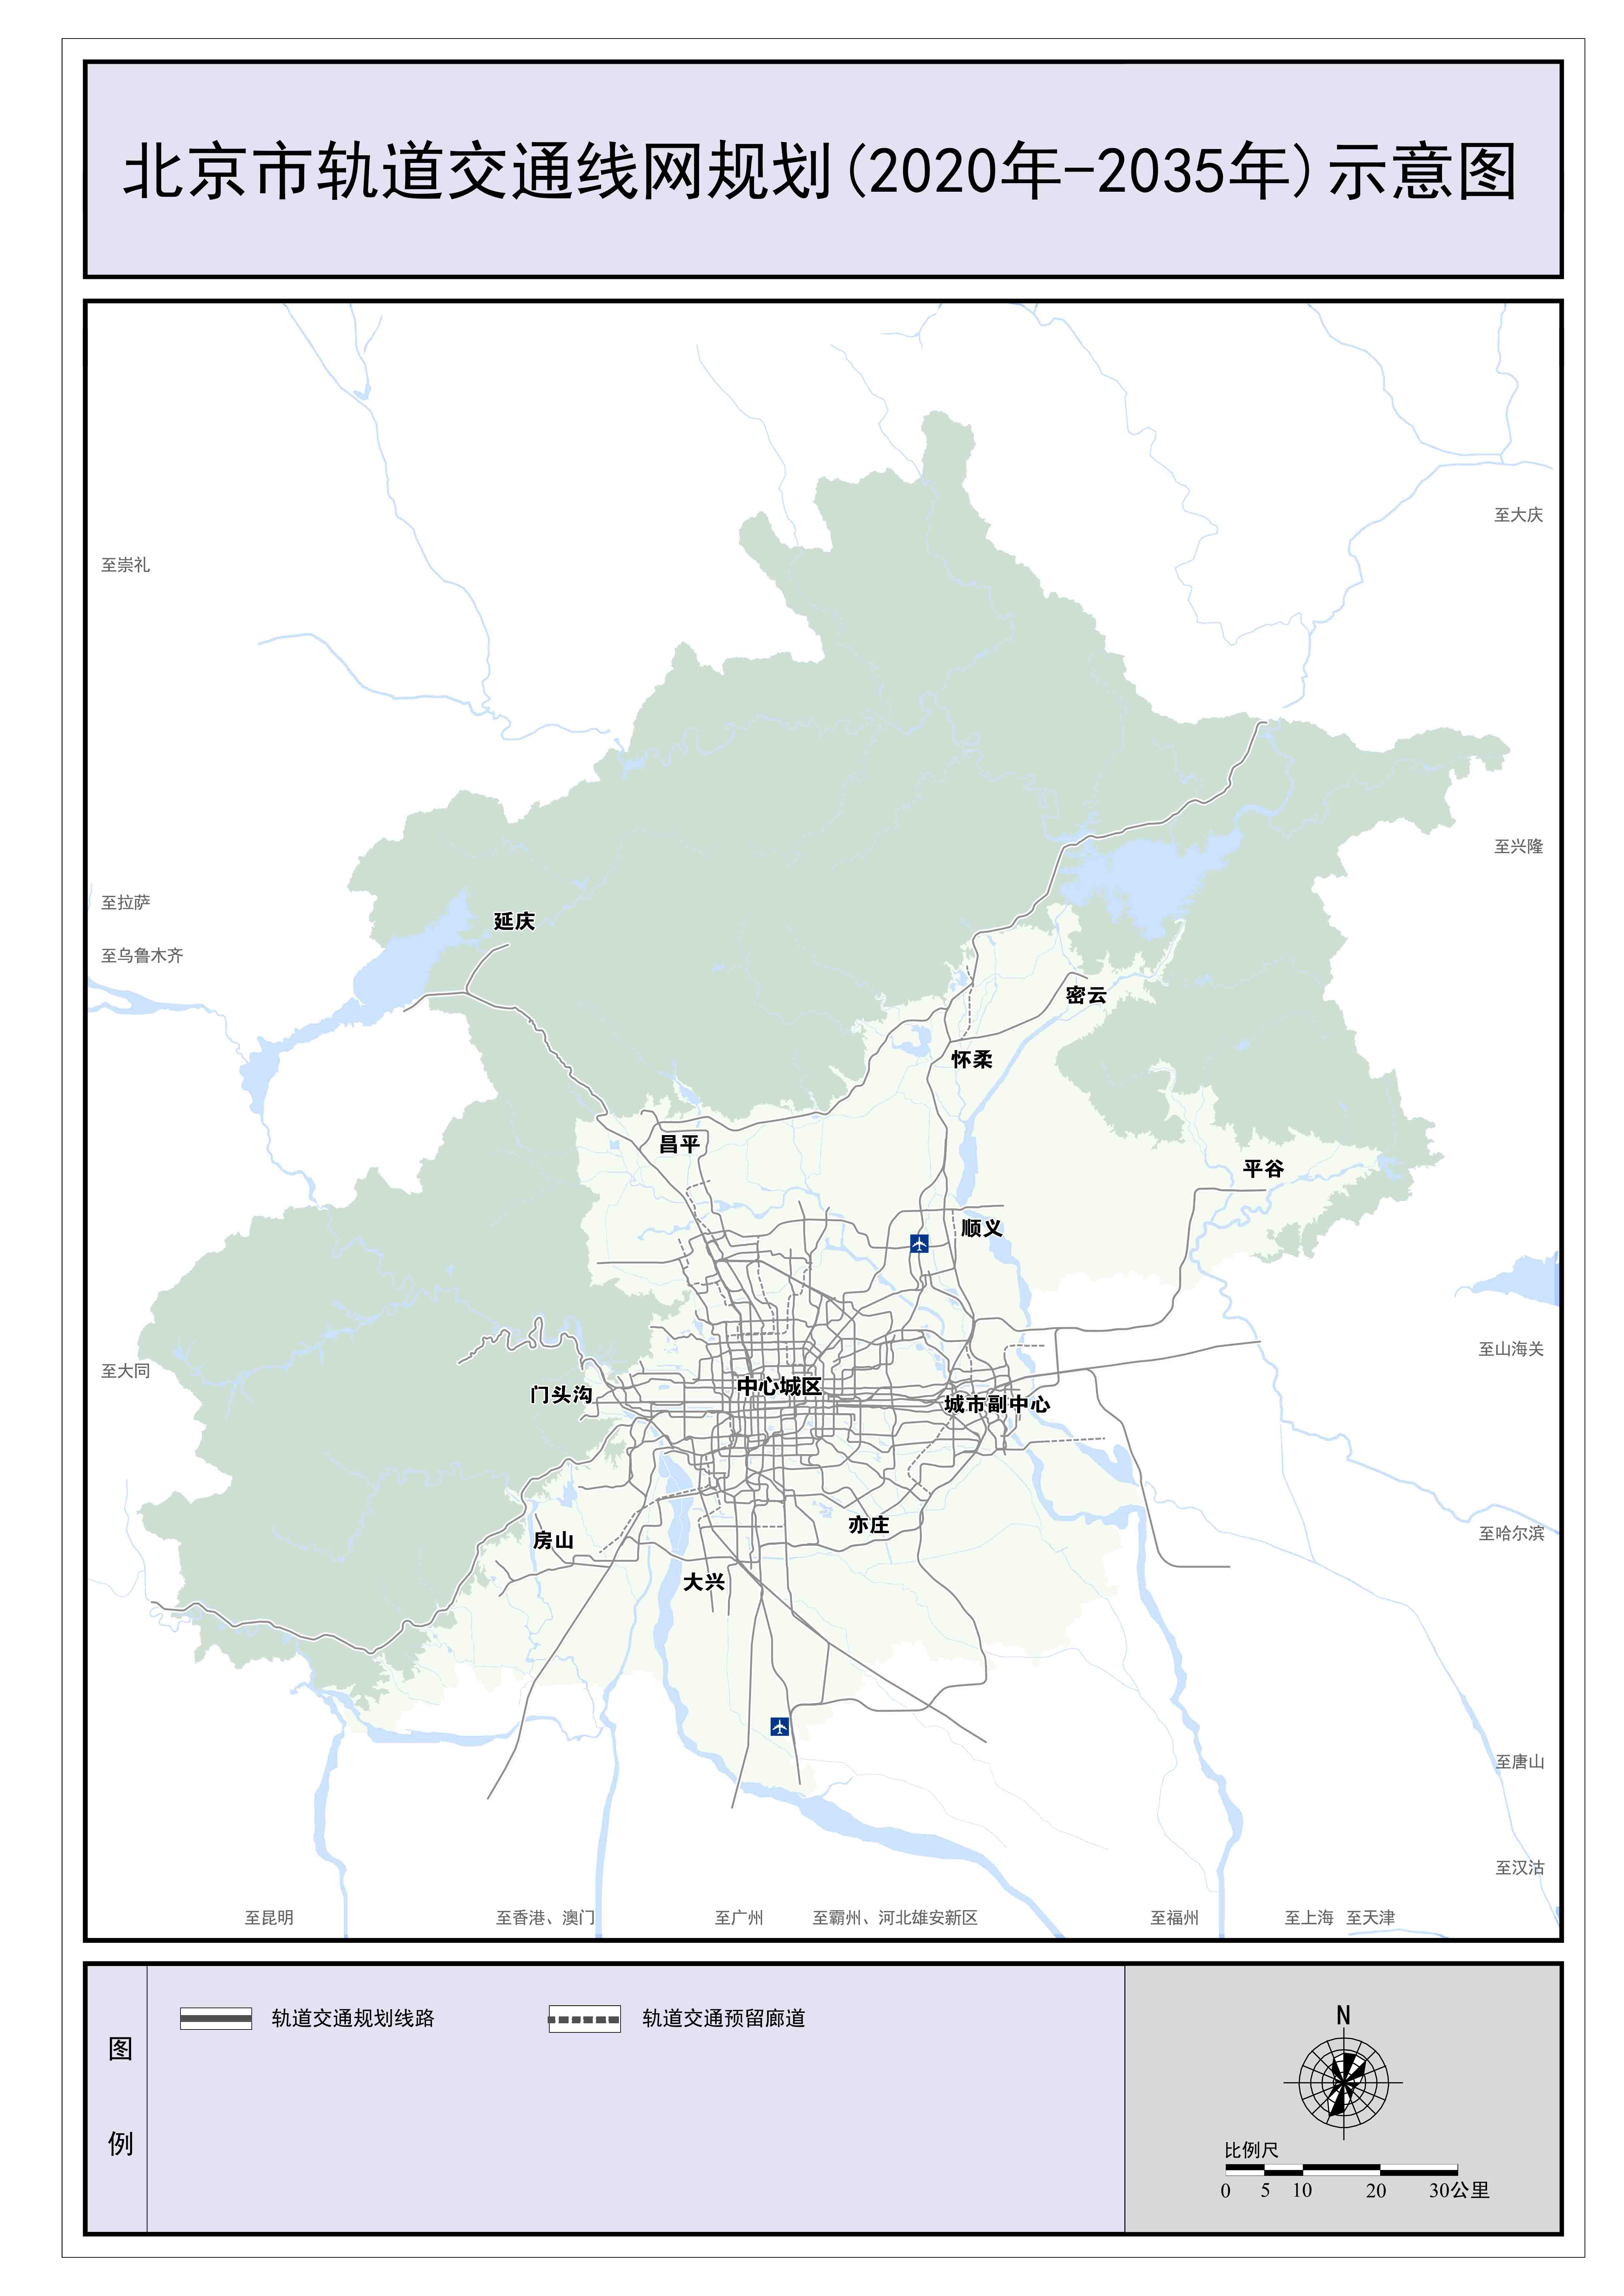 北京市轨道交通线网规划（2020年-2035年）示意图。北京市规划和自然资源委员会供图